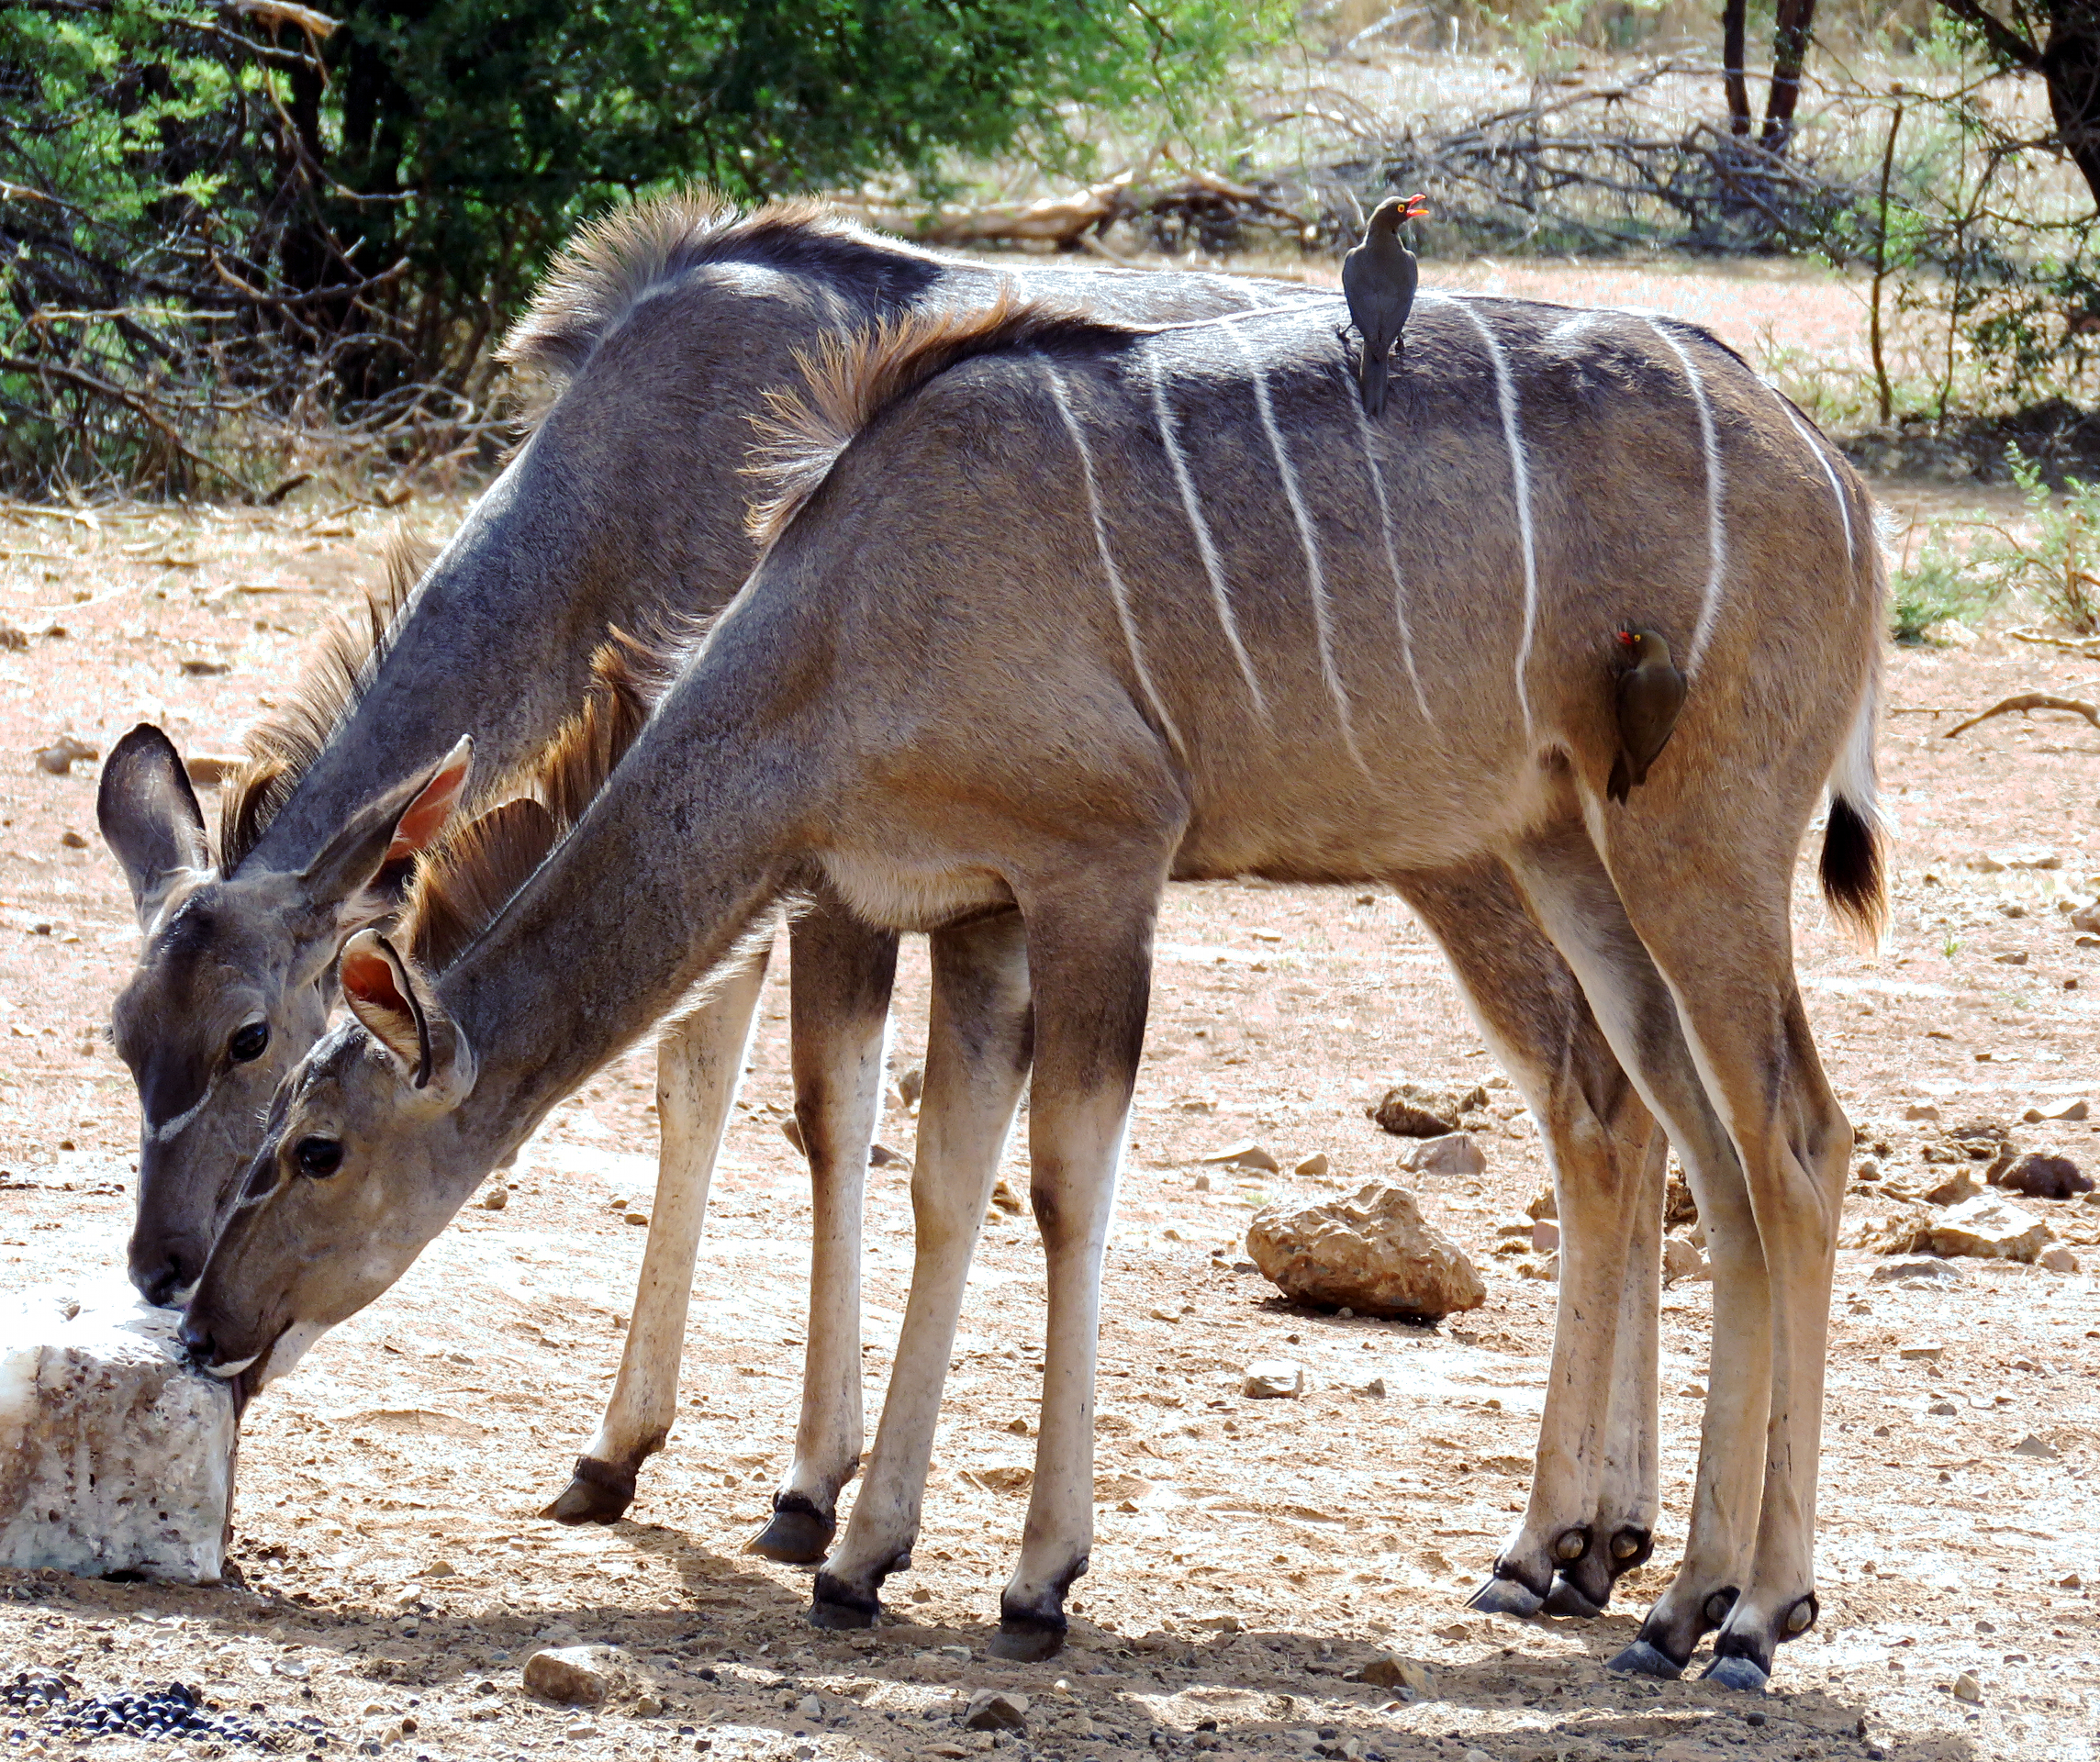 Oxpeclers on Kudu